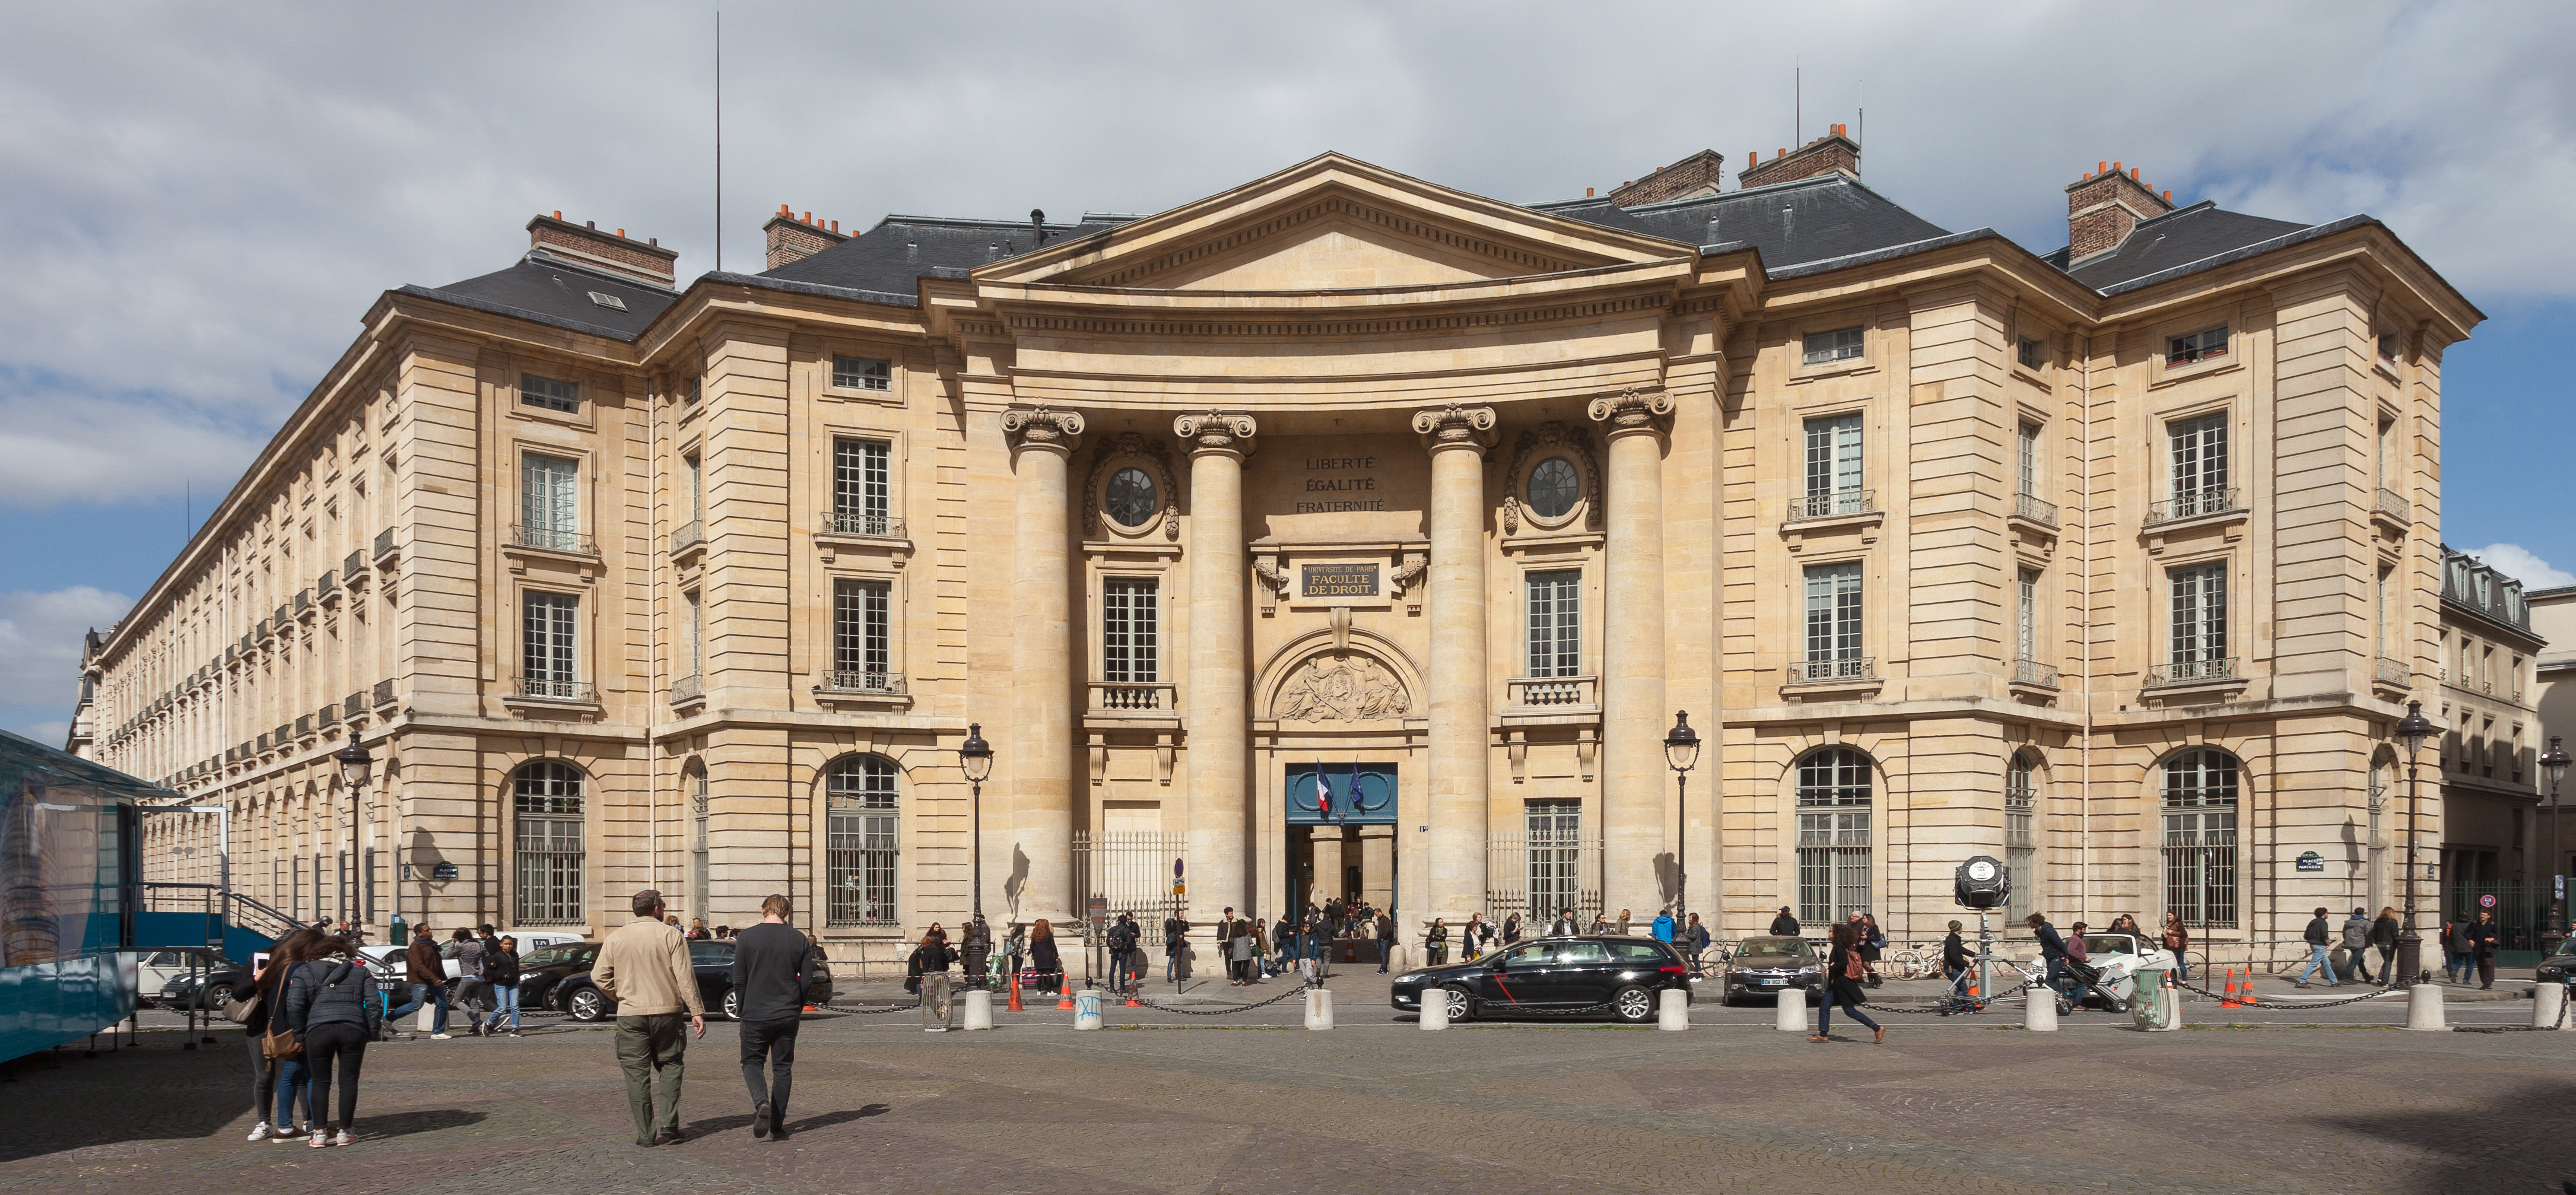 2017. Facultade de dereito. Universidade de París